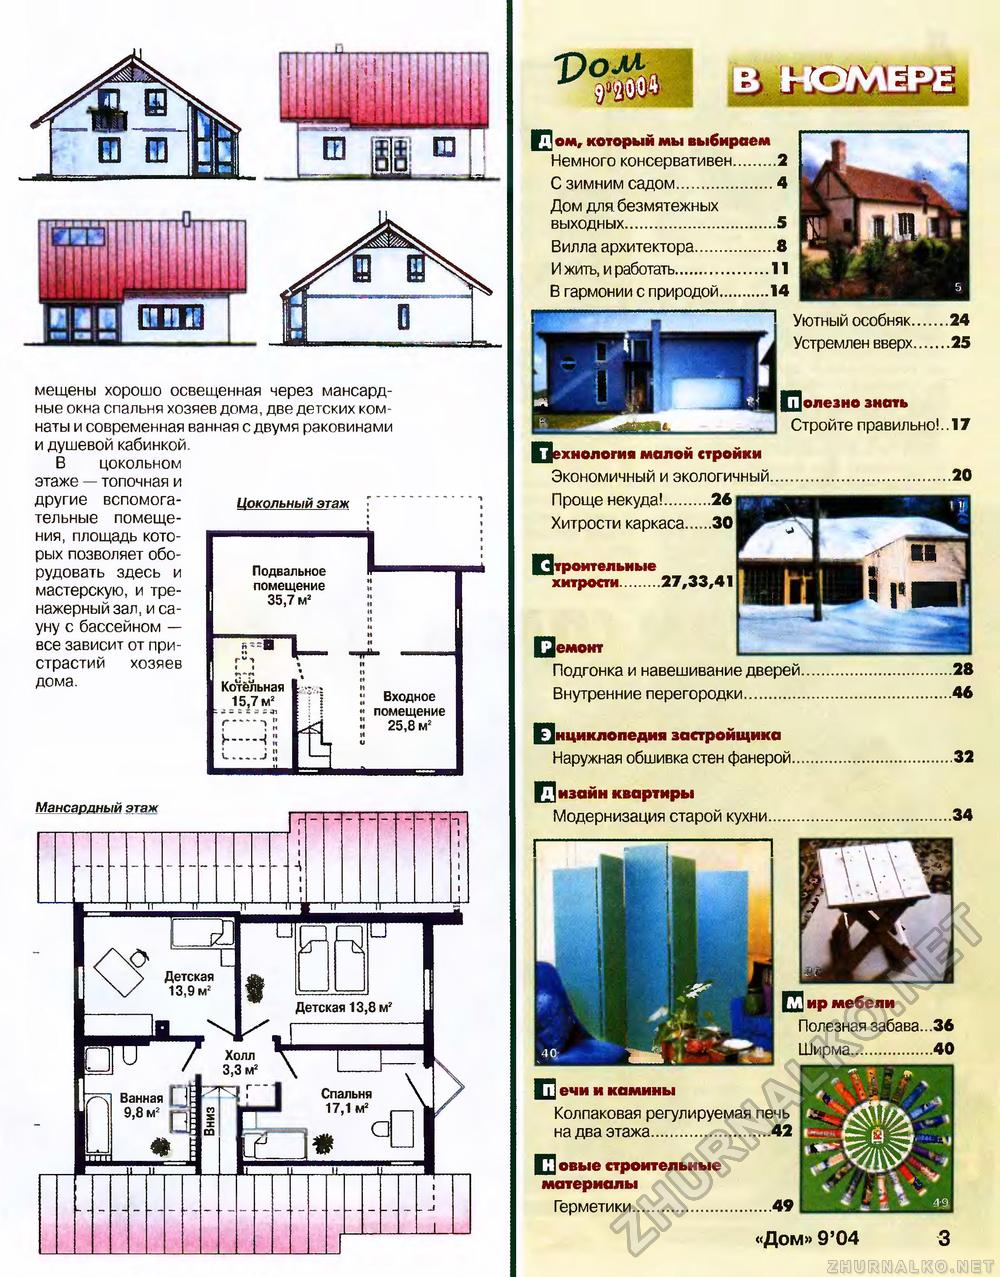 Дом 2004-09, страница 3